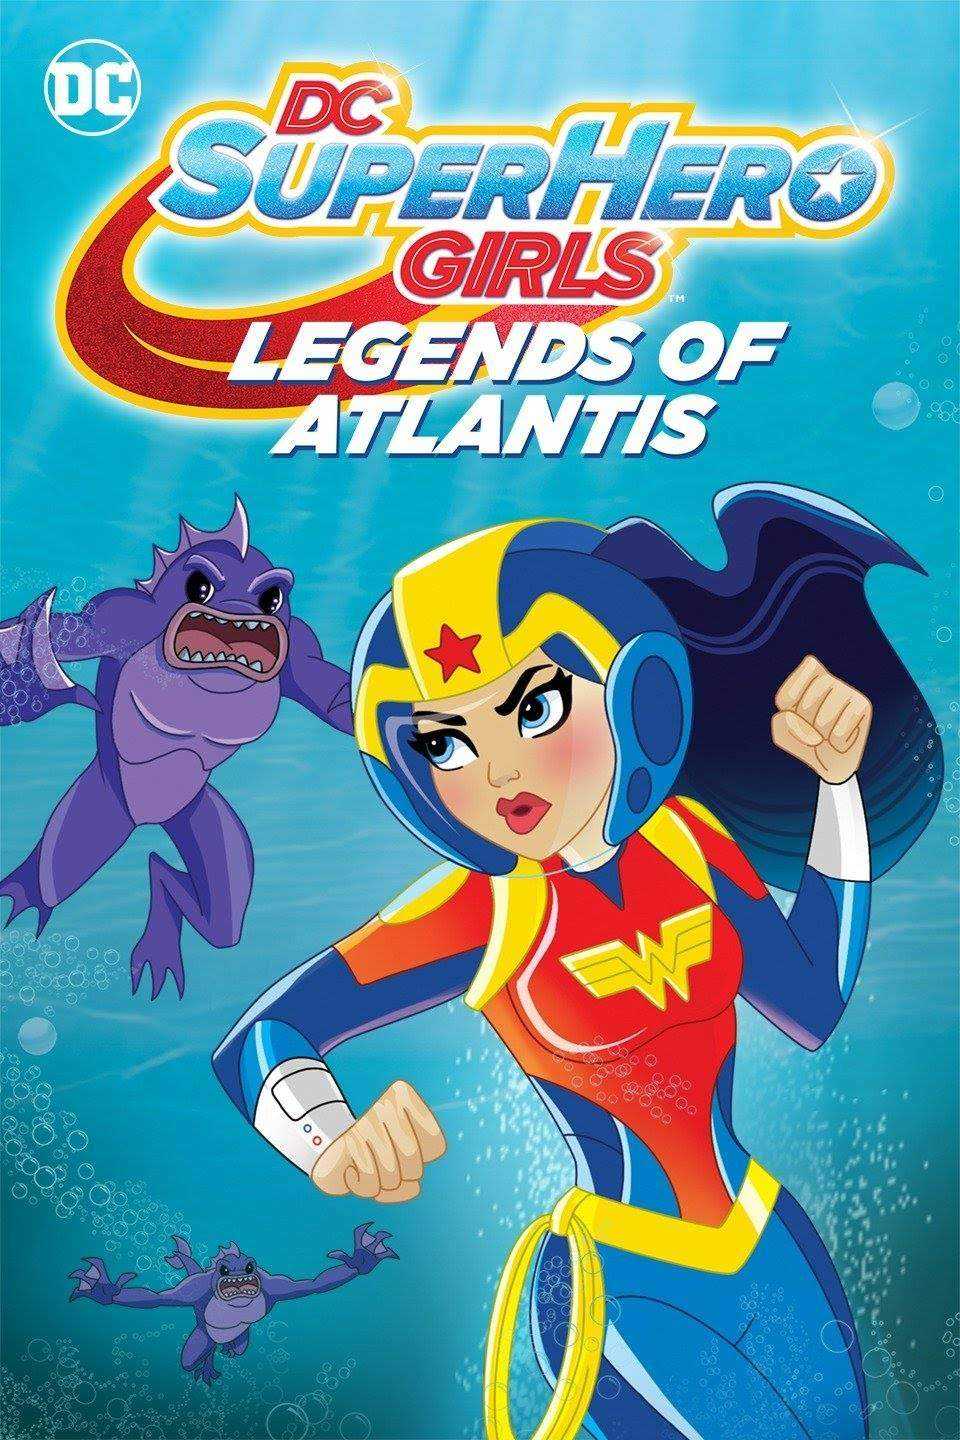 DC Super Hero Girls Legends of Atlantis (2018) Poster.jpg